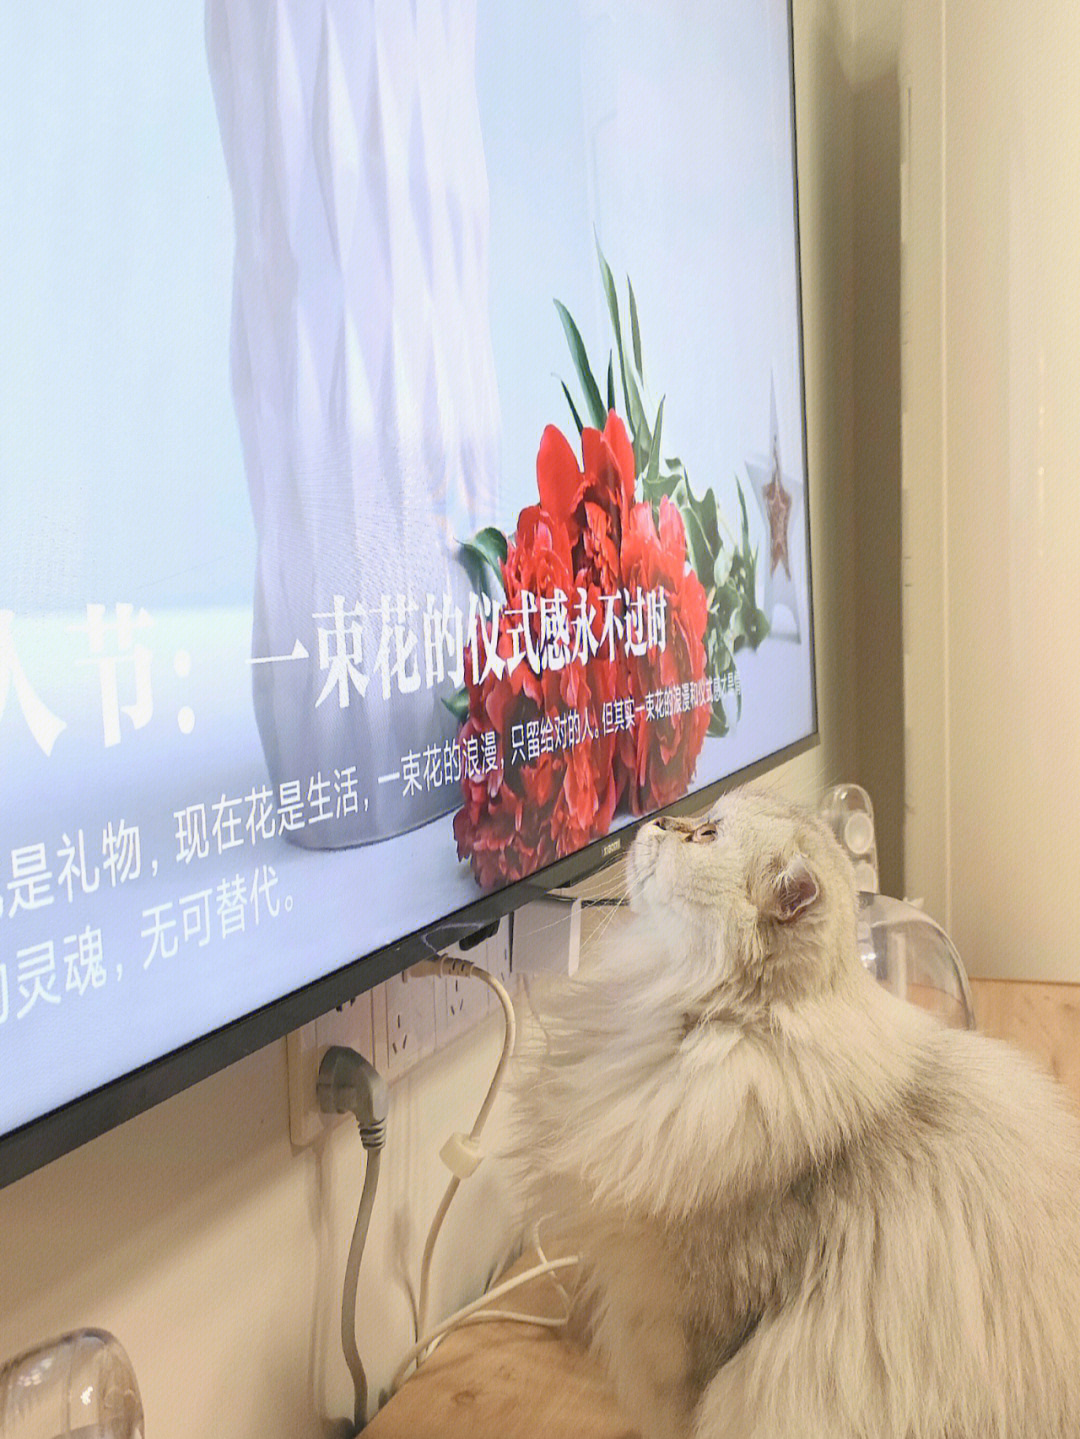 河南卫视电视猫图片